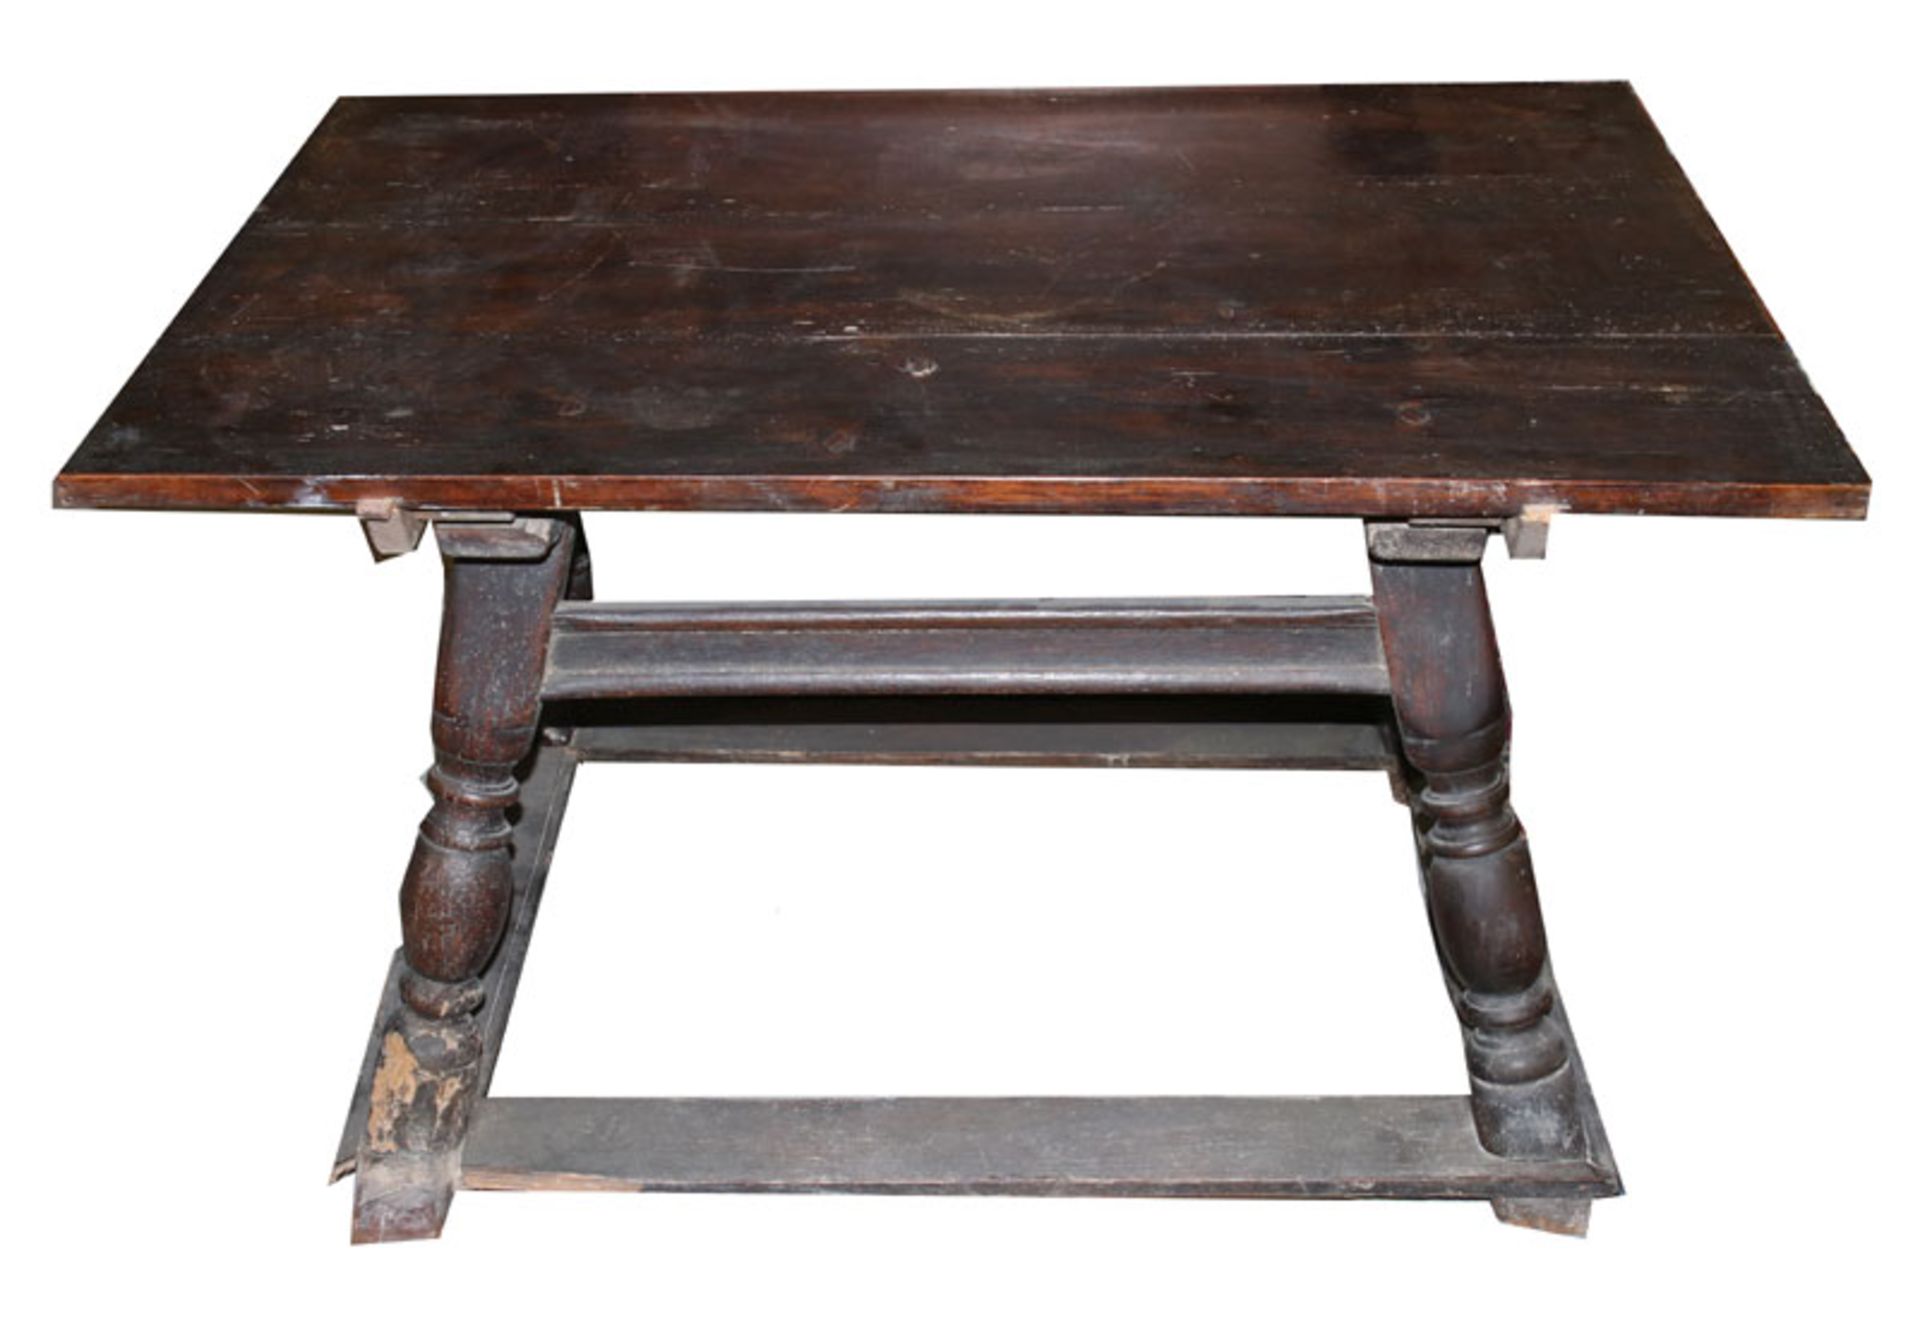 Holztisch um 1800, teils gedrechselt und beschnitzt, Schublade fehlt, starke Alters- und